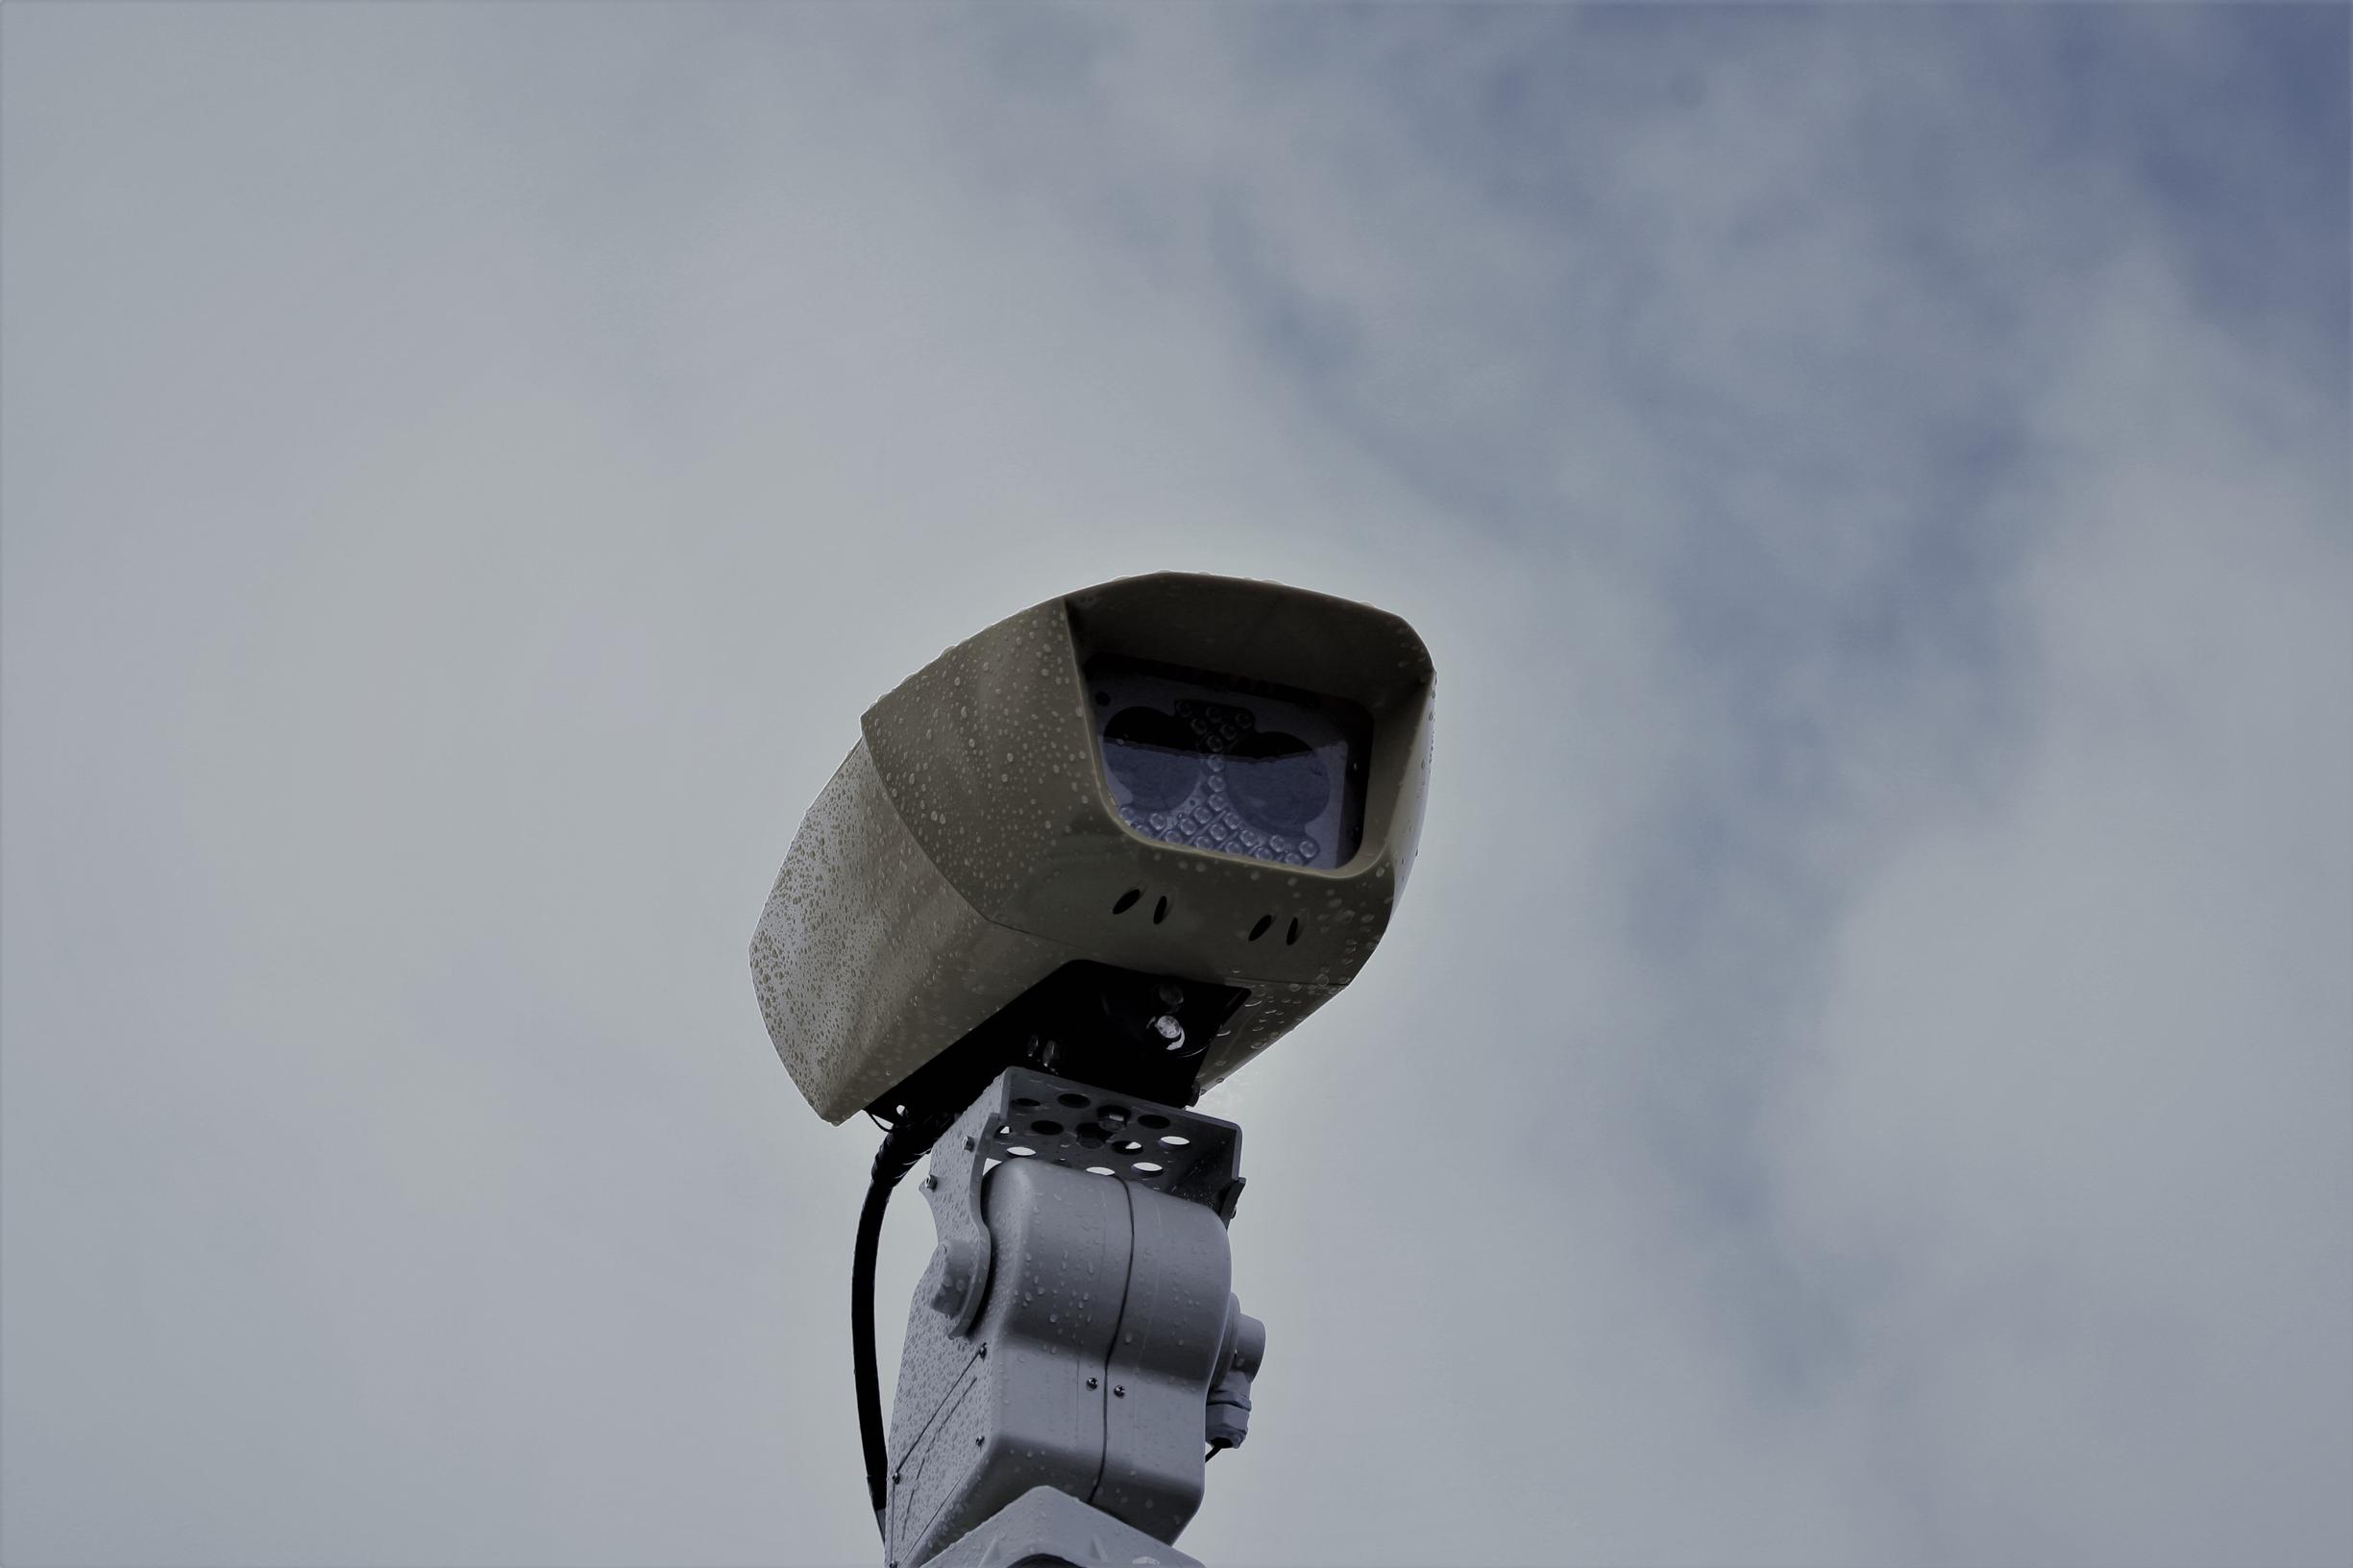 A Yunex Traffic Sicore II ANPR camera